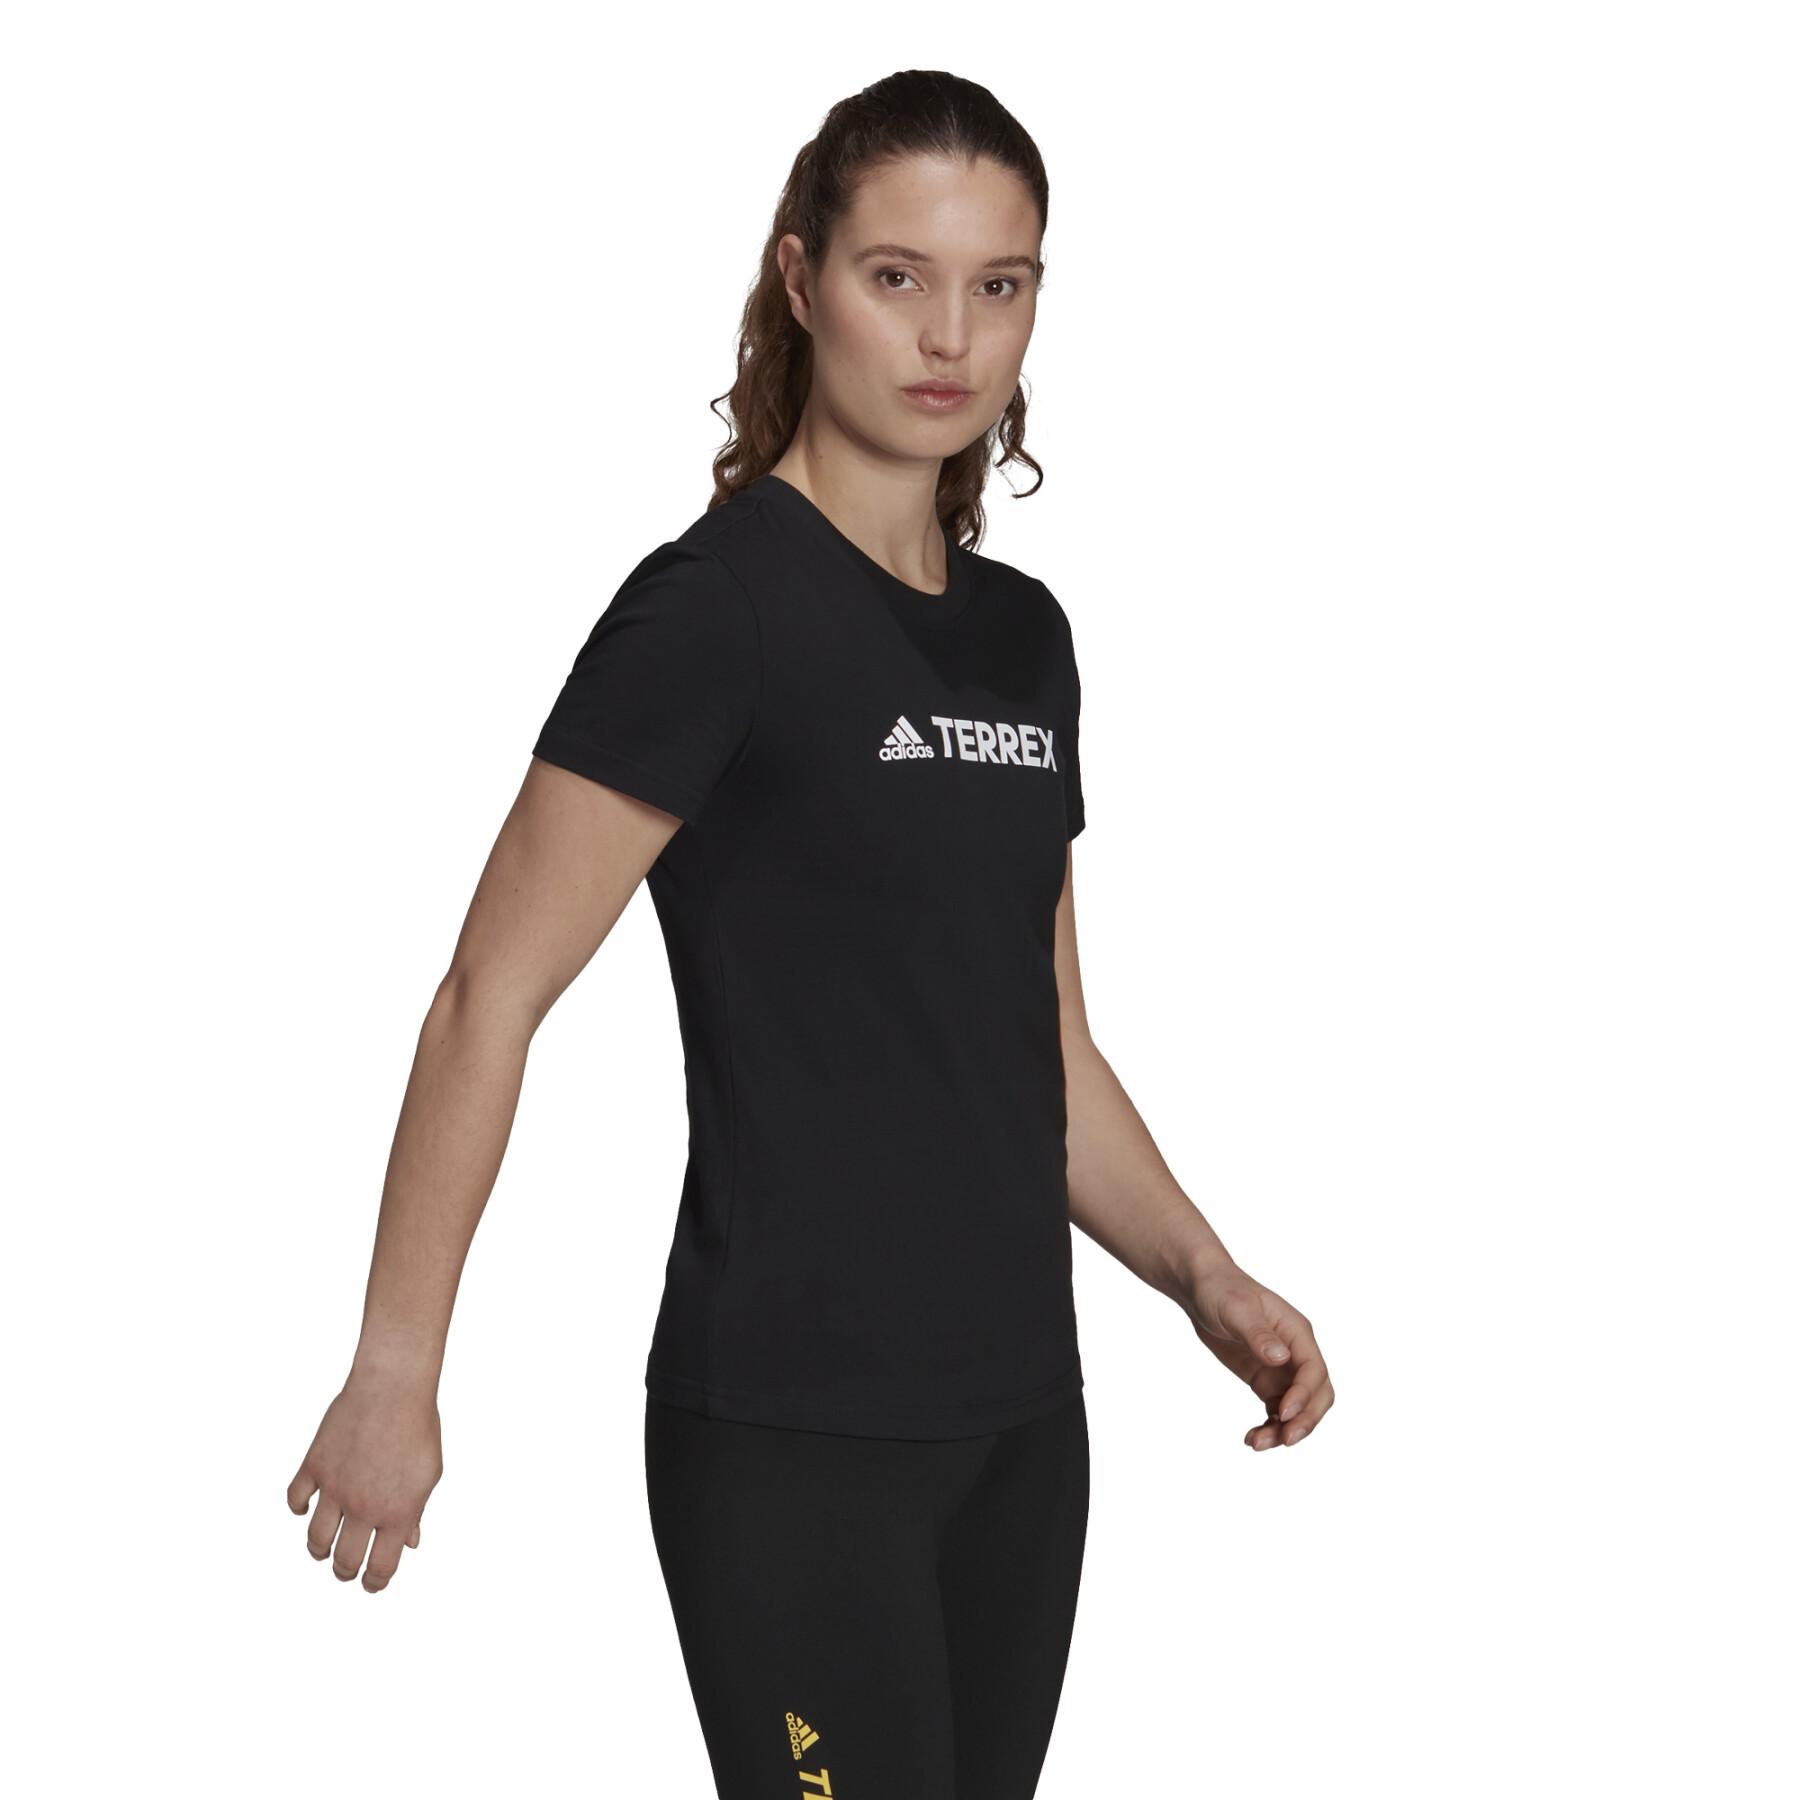 T-shirt femme adidas Terrex Logo